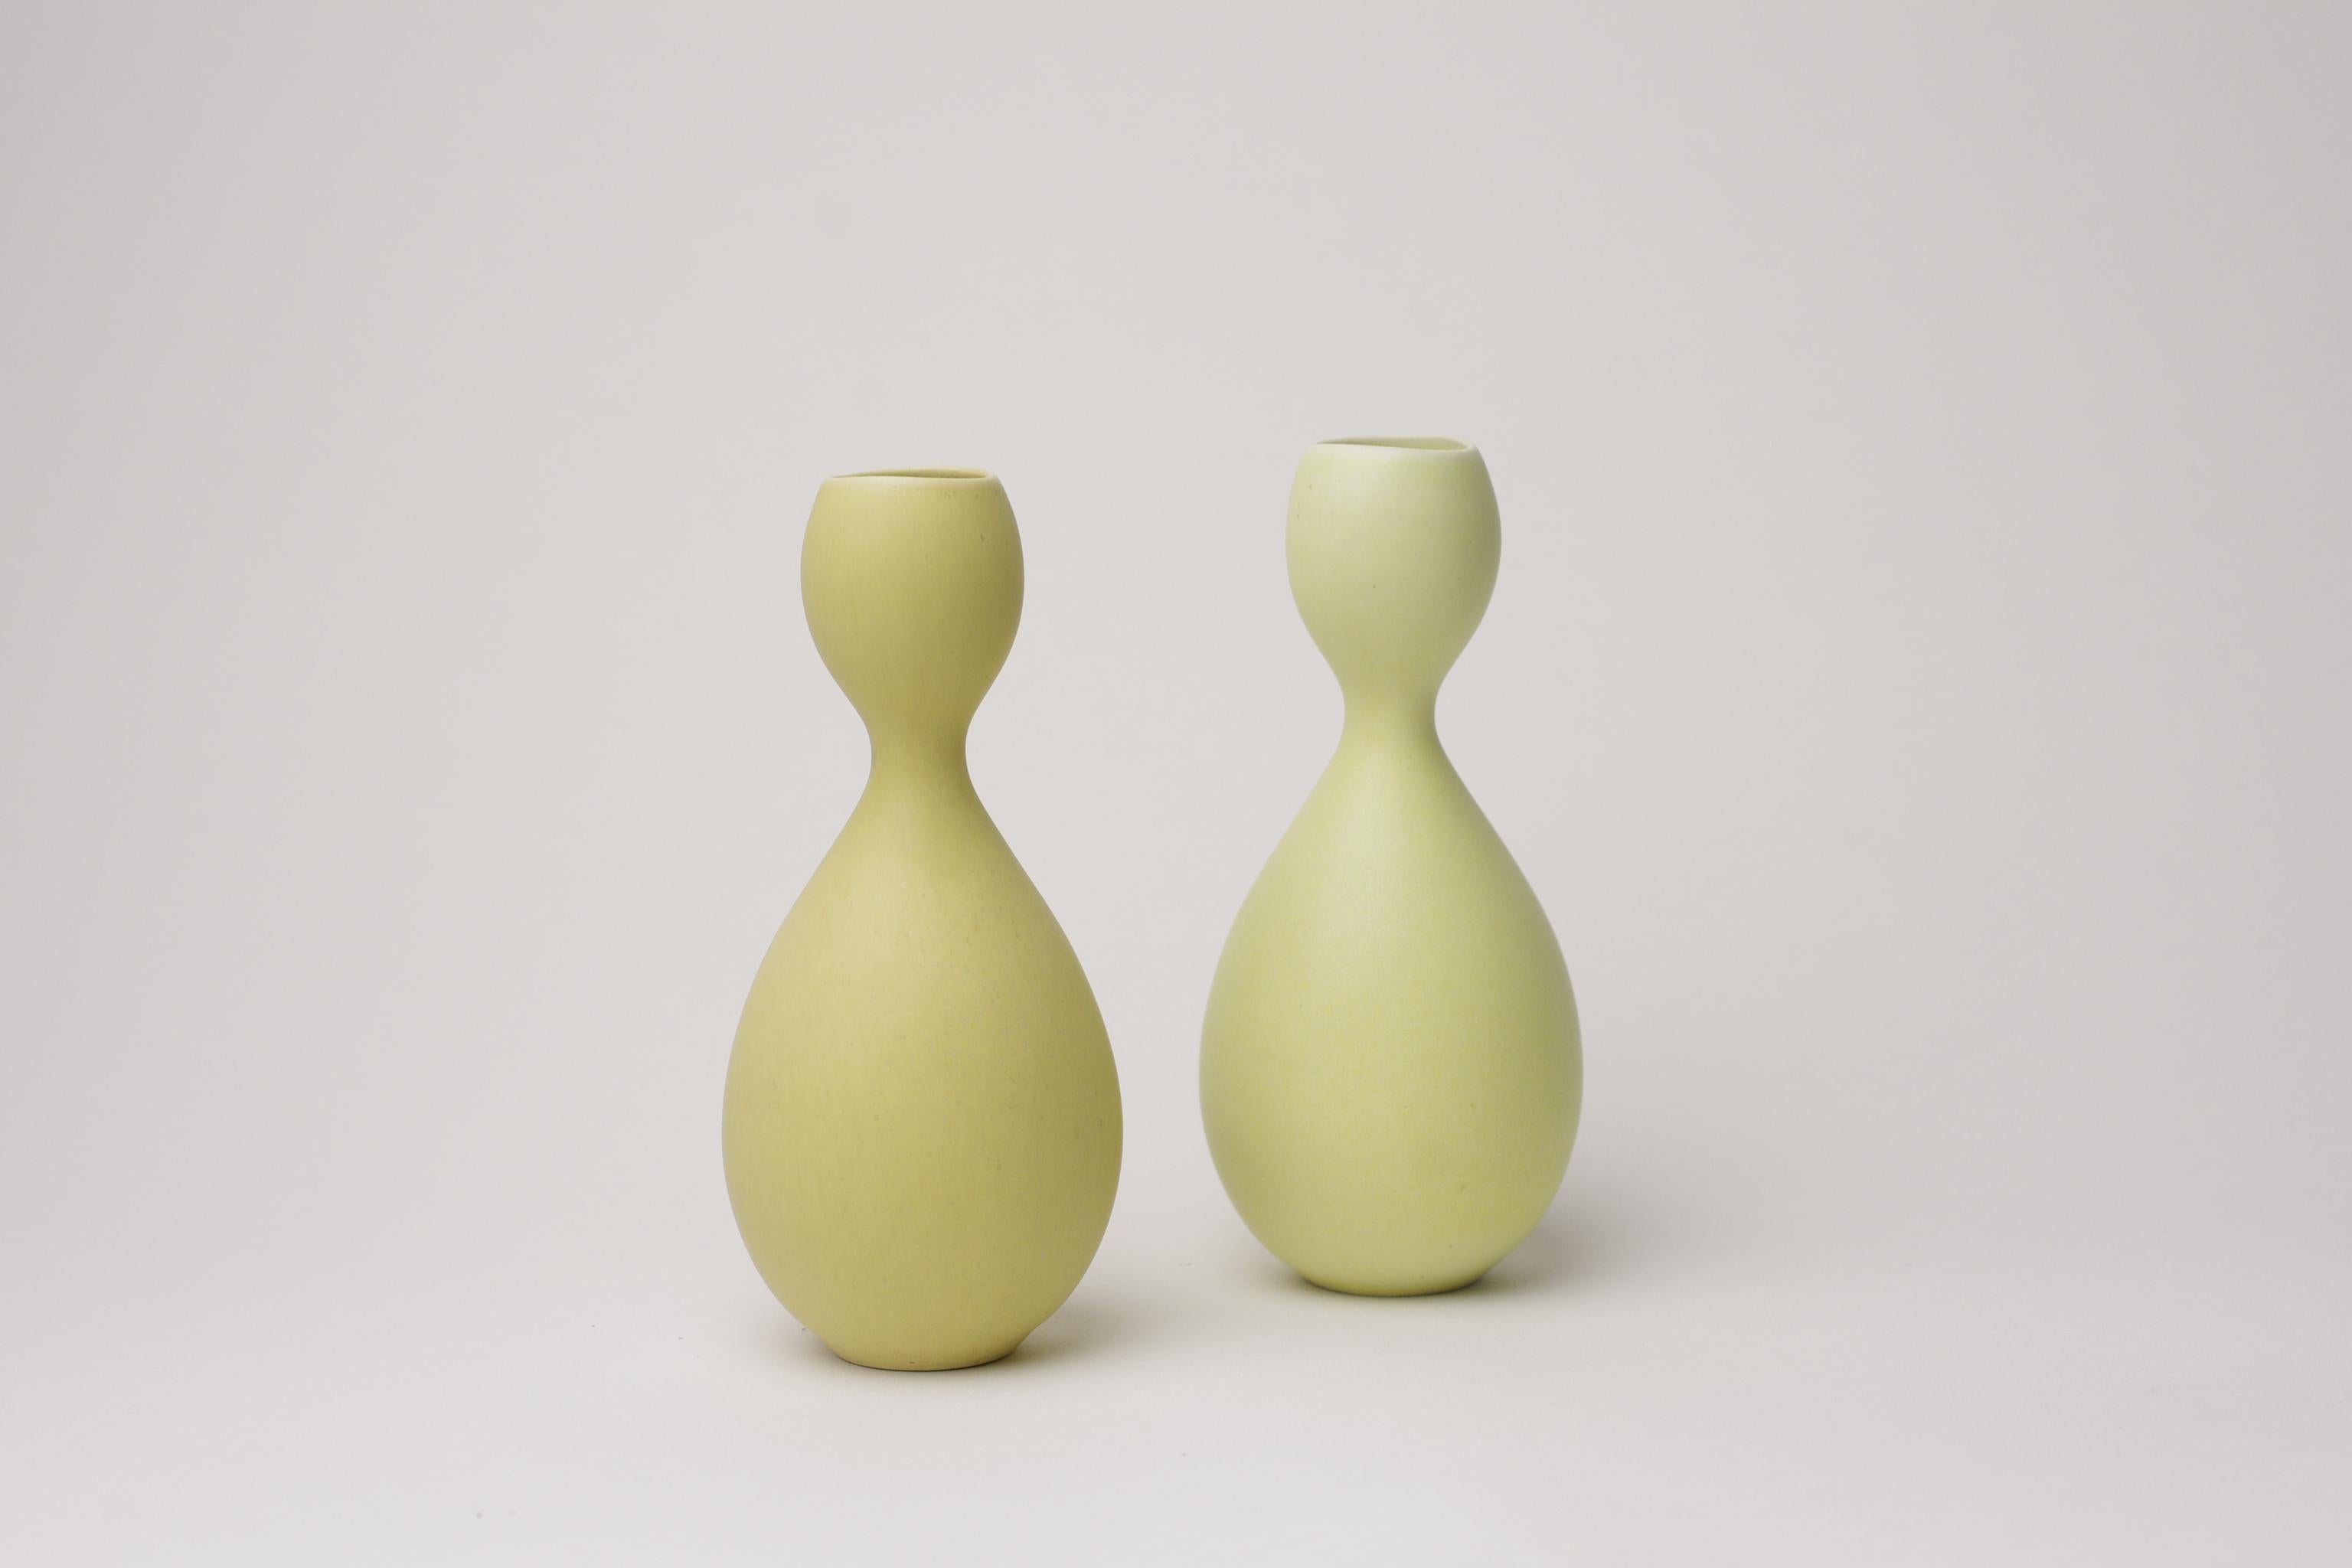 Description du produit :
Ces deux petits vases font partie de la série Vitrin de Stig Lindberg. La série Virtin se compose de 14 pièces différentes, 3 bols et 11 vases. La série Vitrin est née d'une tentative d'offrir à un large public des faïences